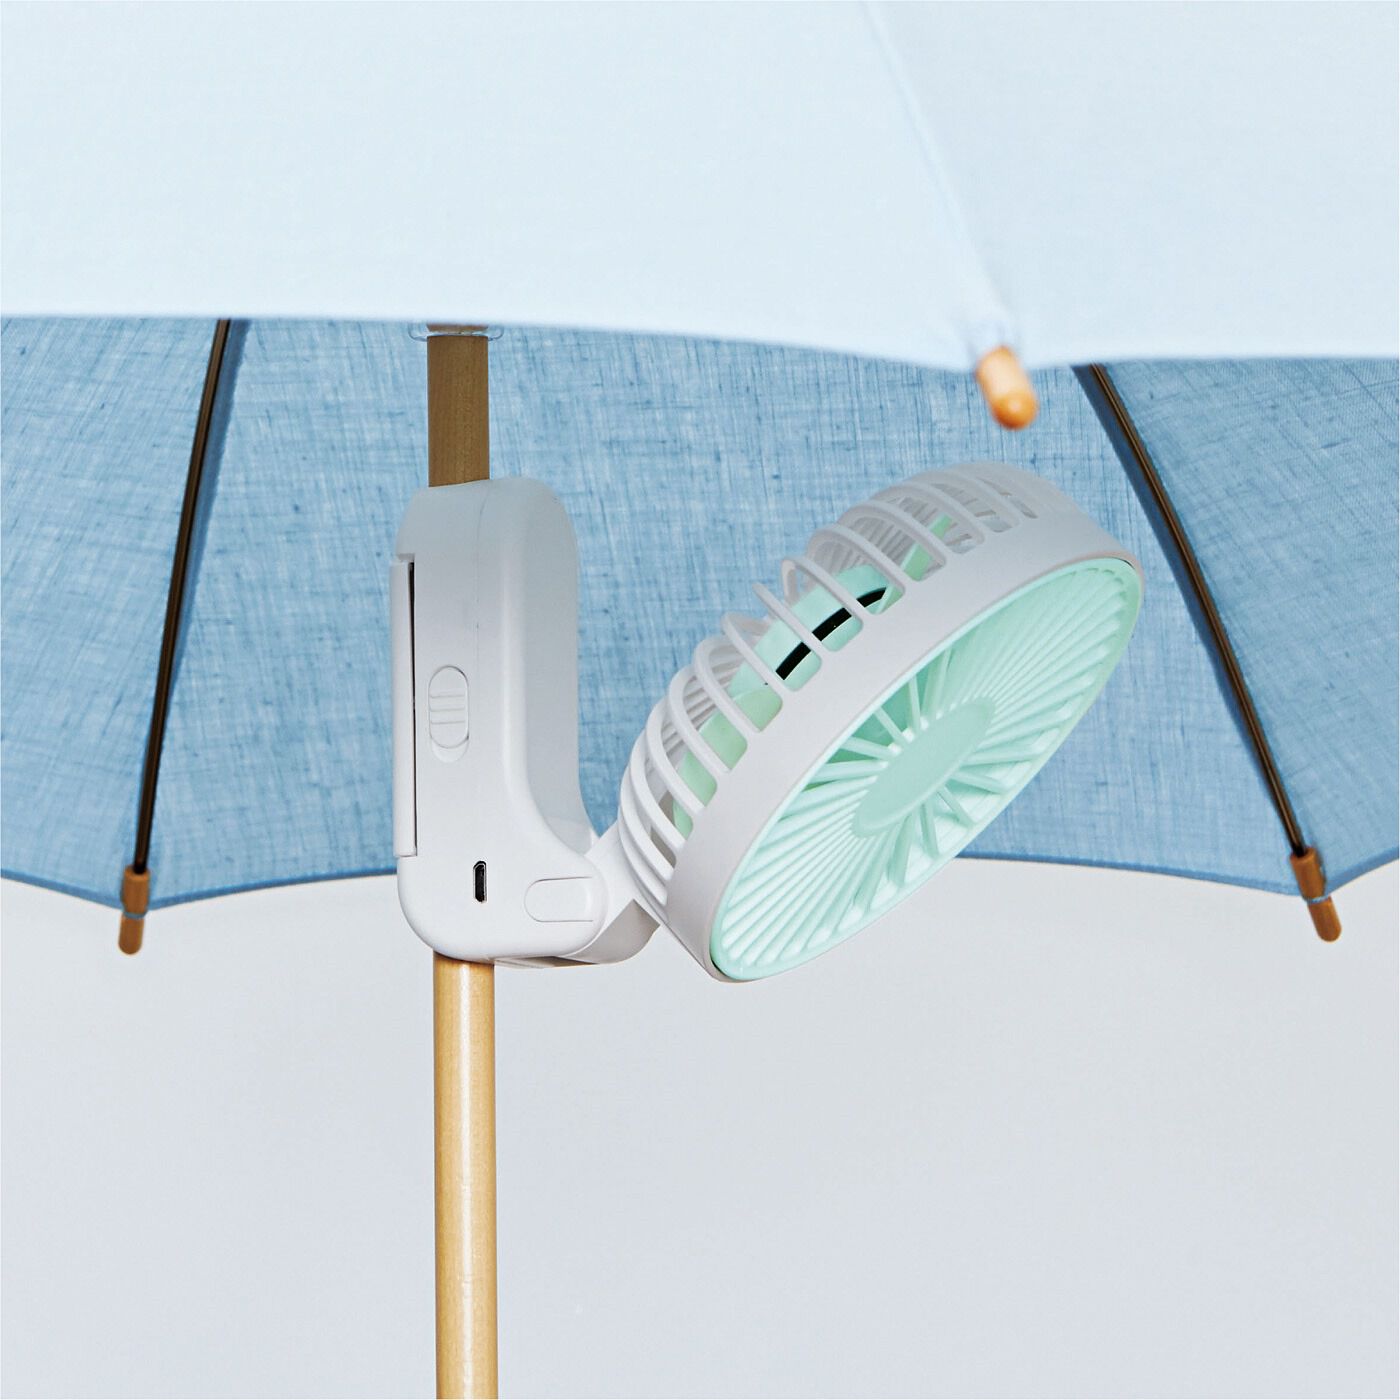 flufeel|傘に付ければ木陰気分♪　3‐WAYで涼めるミニファン扇風機|傘の上部に付ければ、外からは見えずこっそり涼しい。